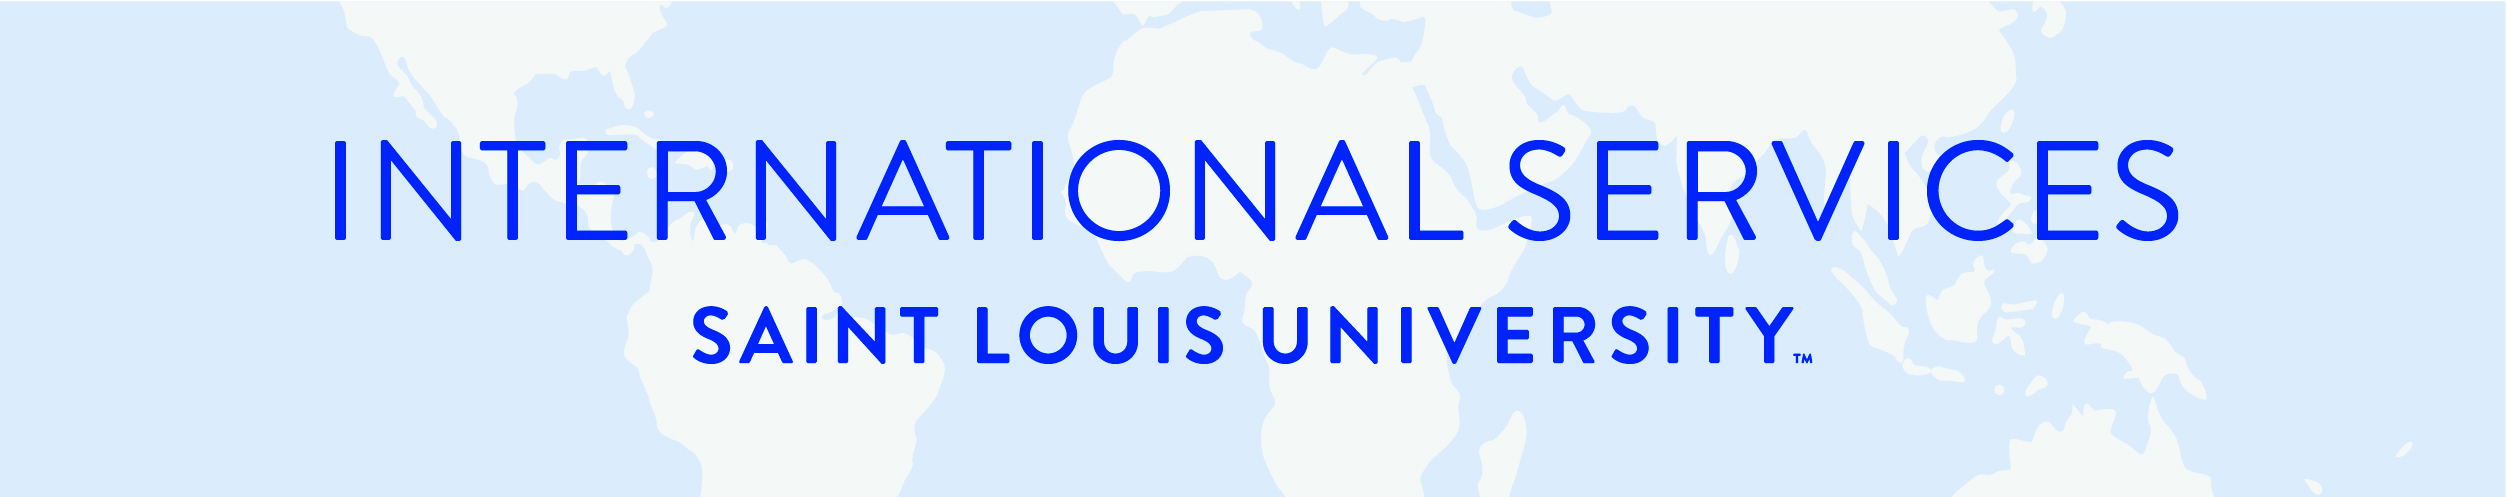 International Services - Saint Louis University